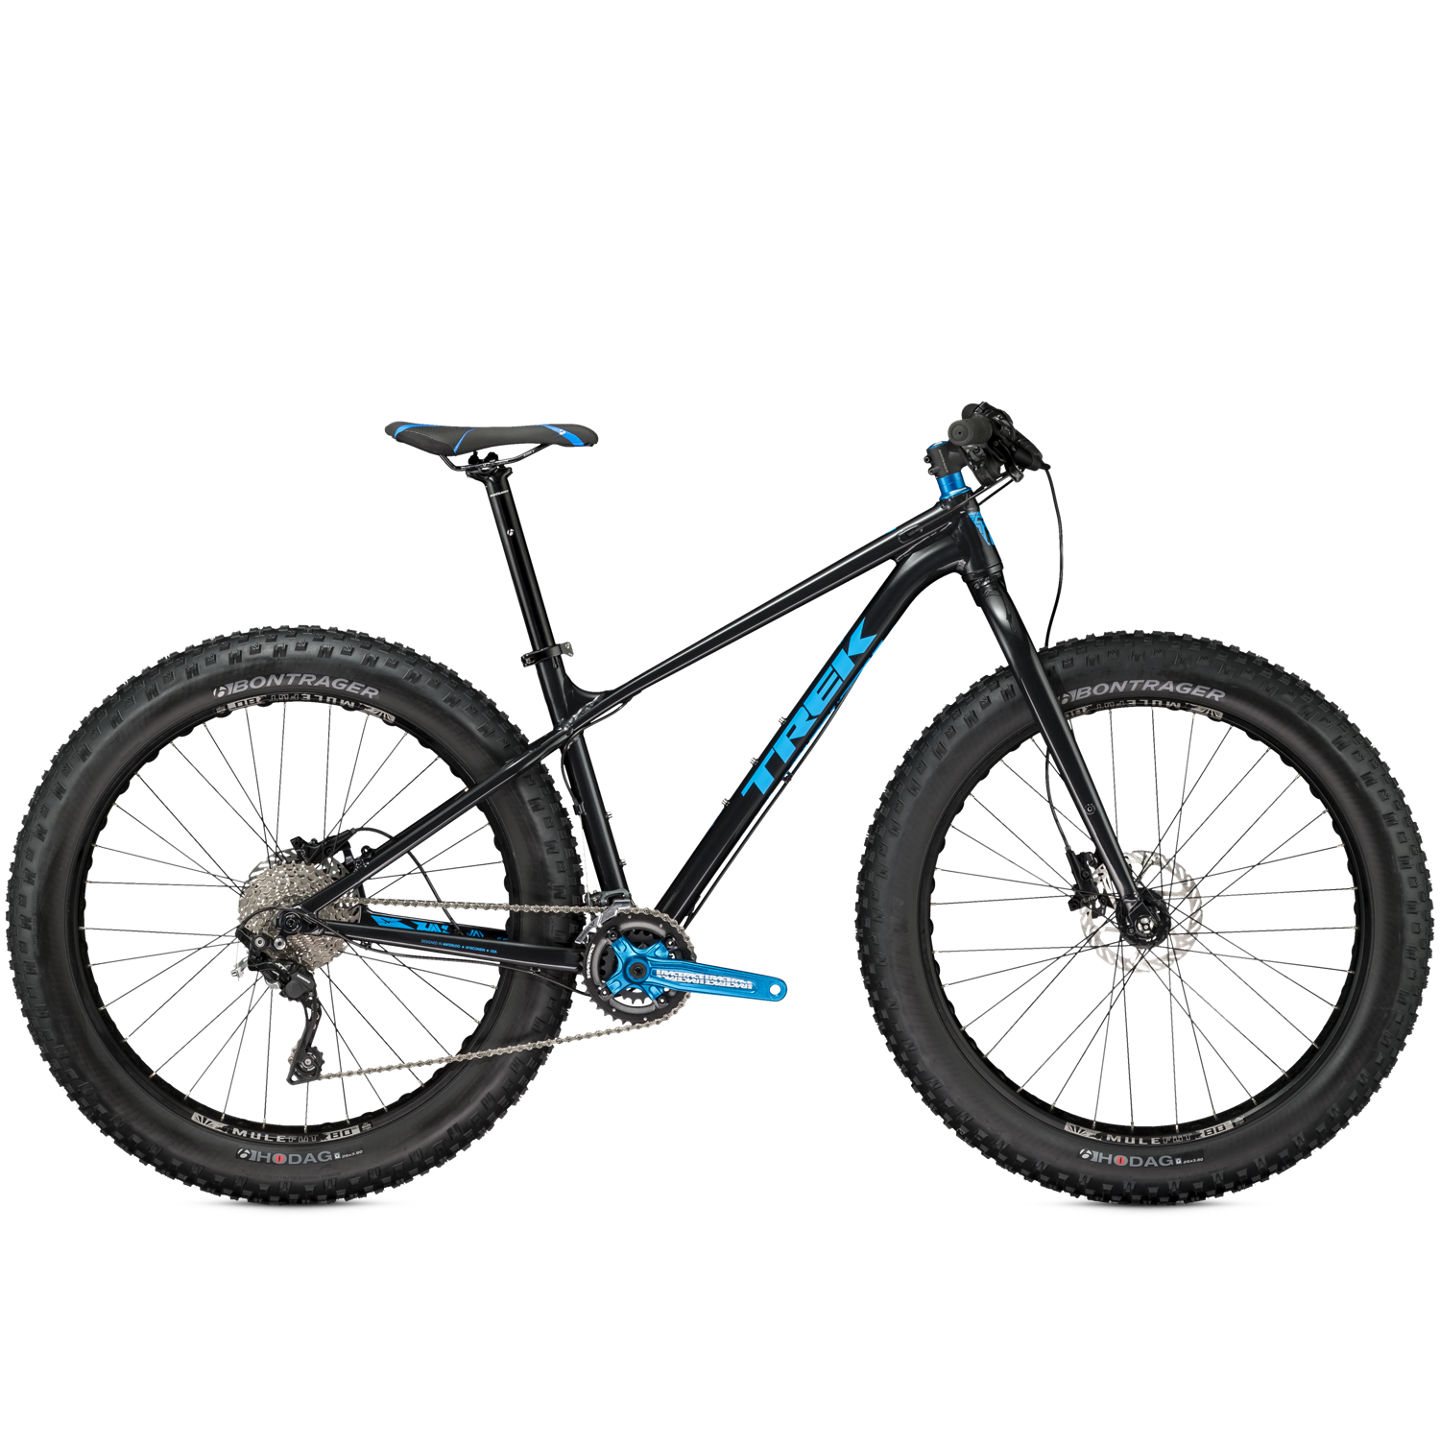 2015 Trek Farley 6 - Bicycle Details 